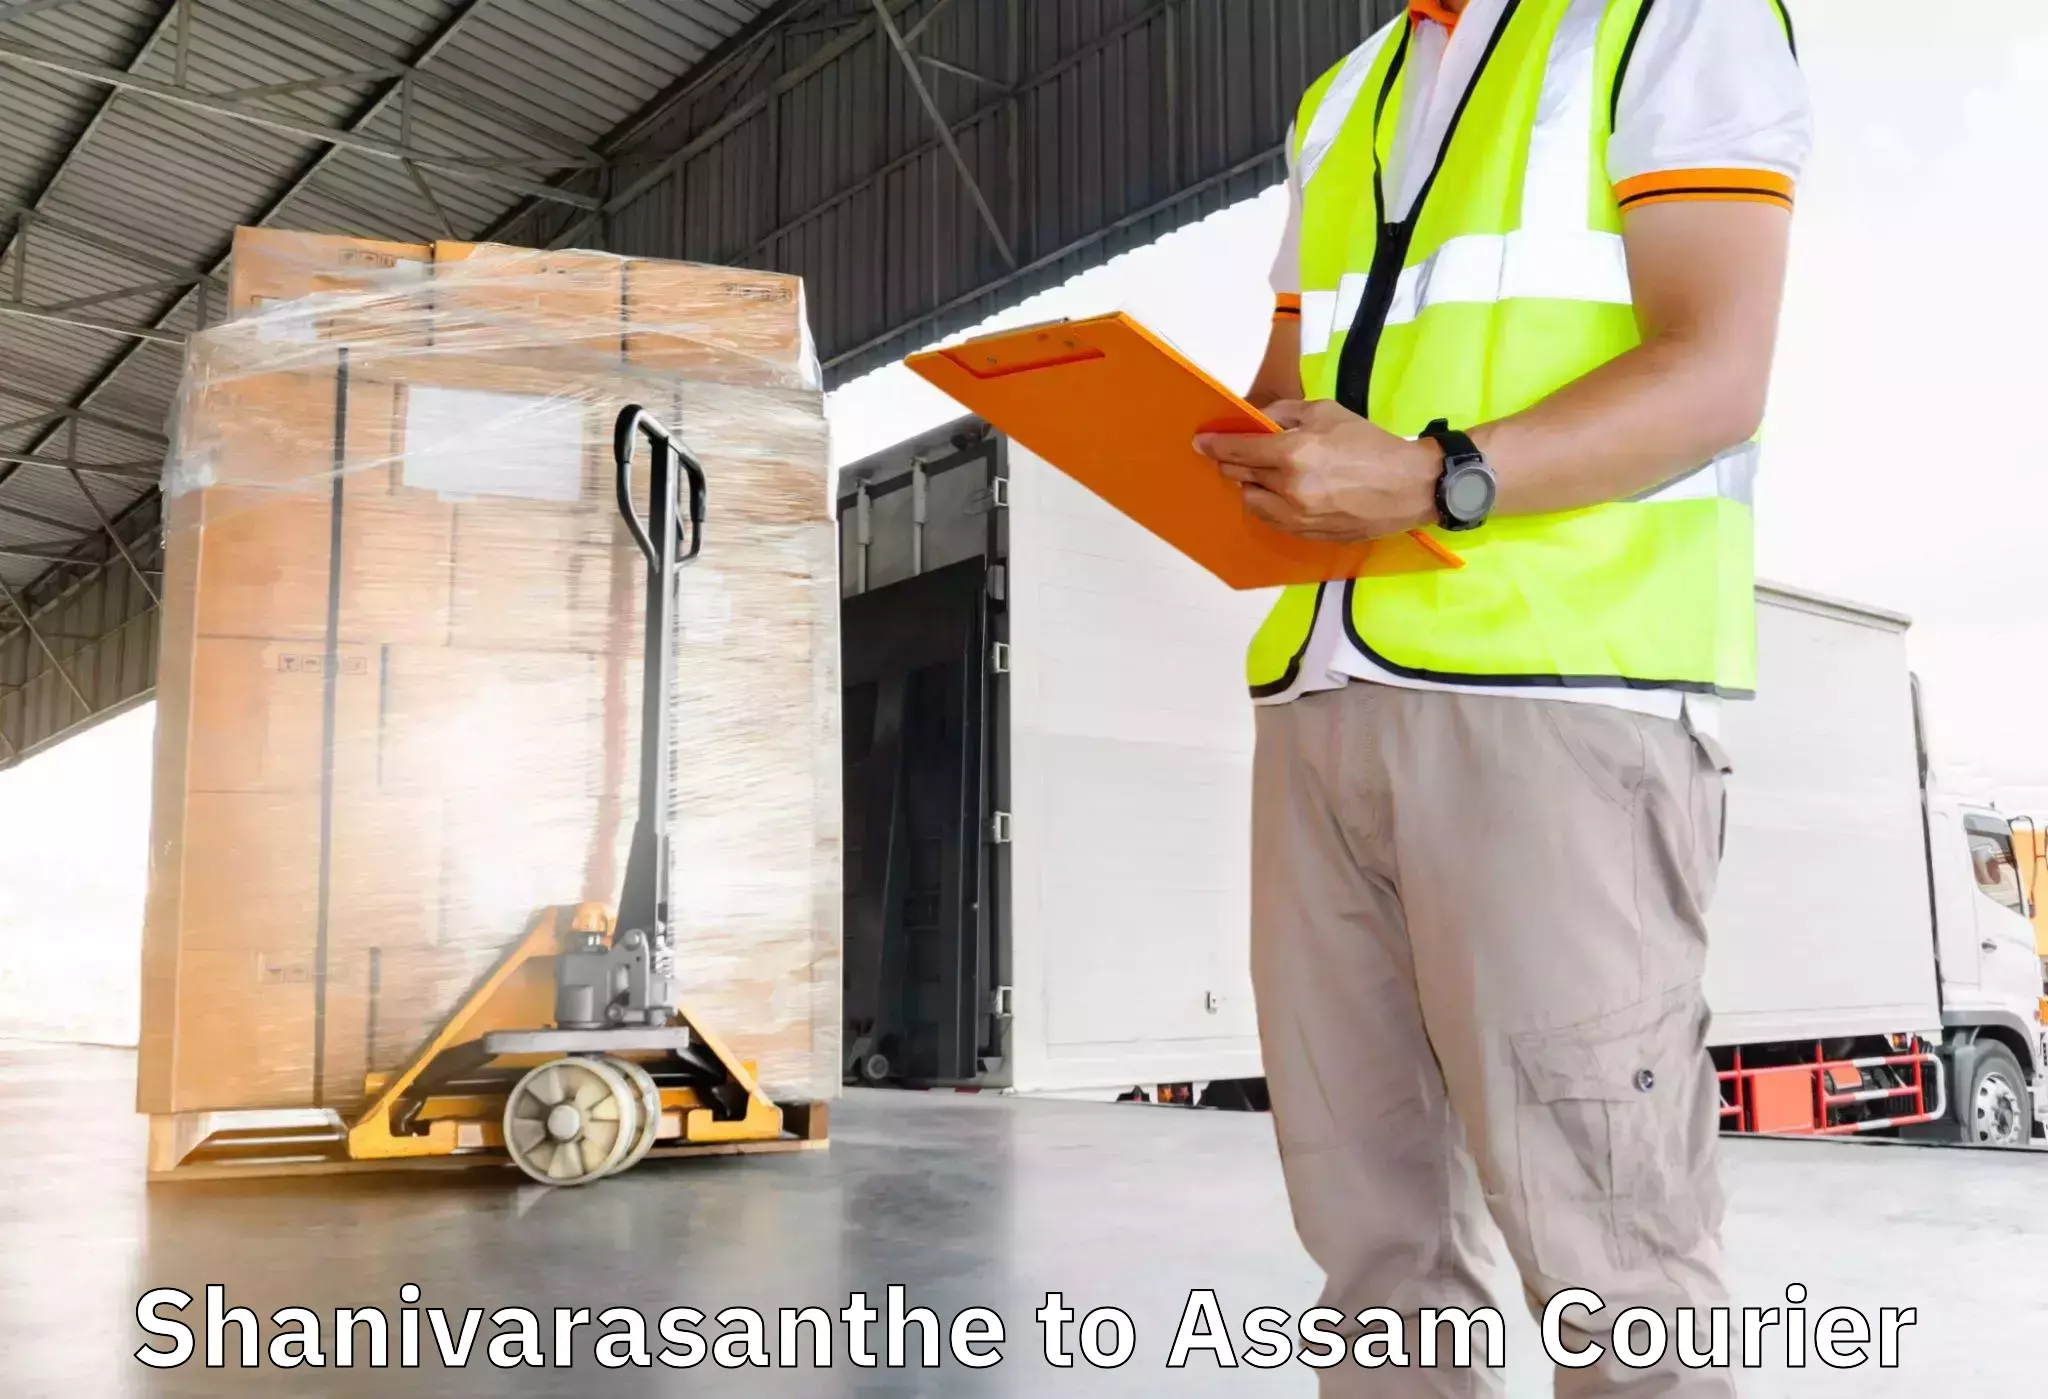 Efficient moving company Shanivarasanthe to Hojai Lanka